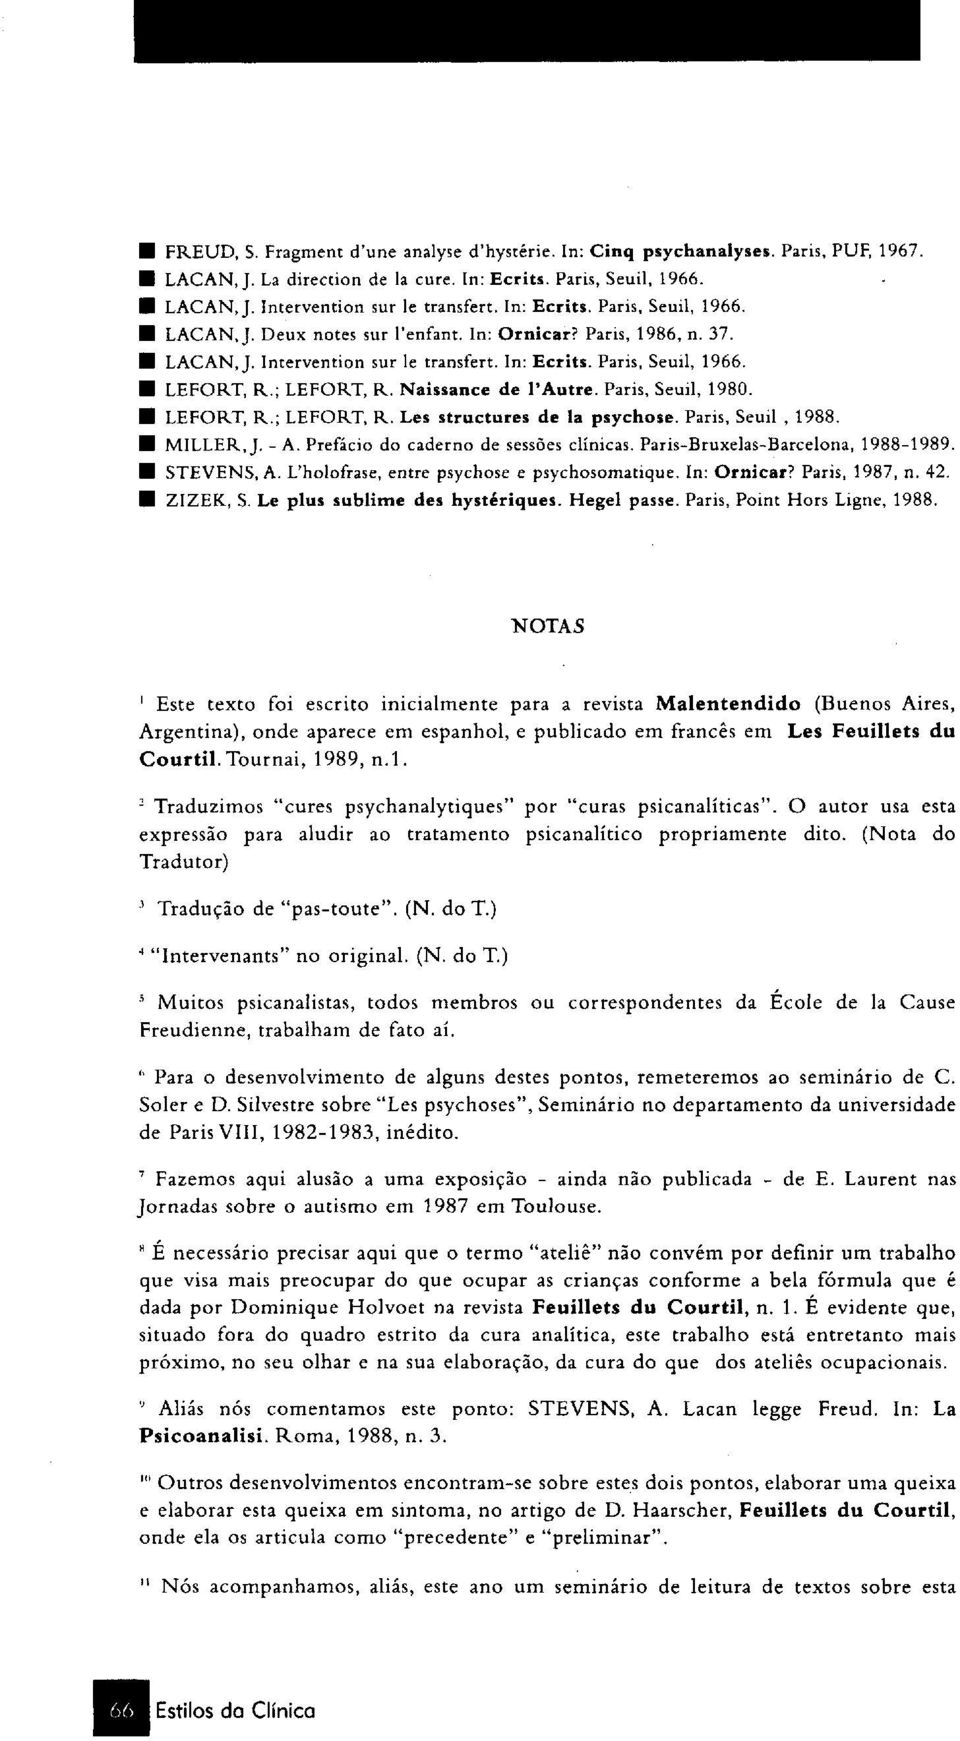 Naissance de l'autre. Paris, Seuil, 1980. LEFORT, R.; LEFORT, R. Les structures de la psychose. Paris, Seuil, 1988. H MILLER, J. - A. Prefácio do caderno de sessões clínicas.